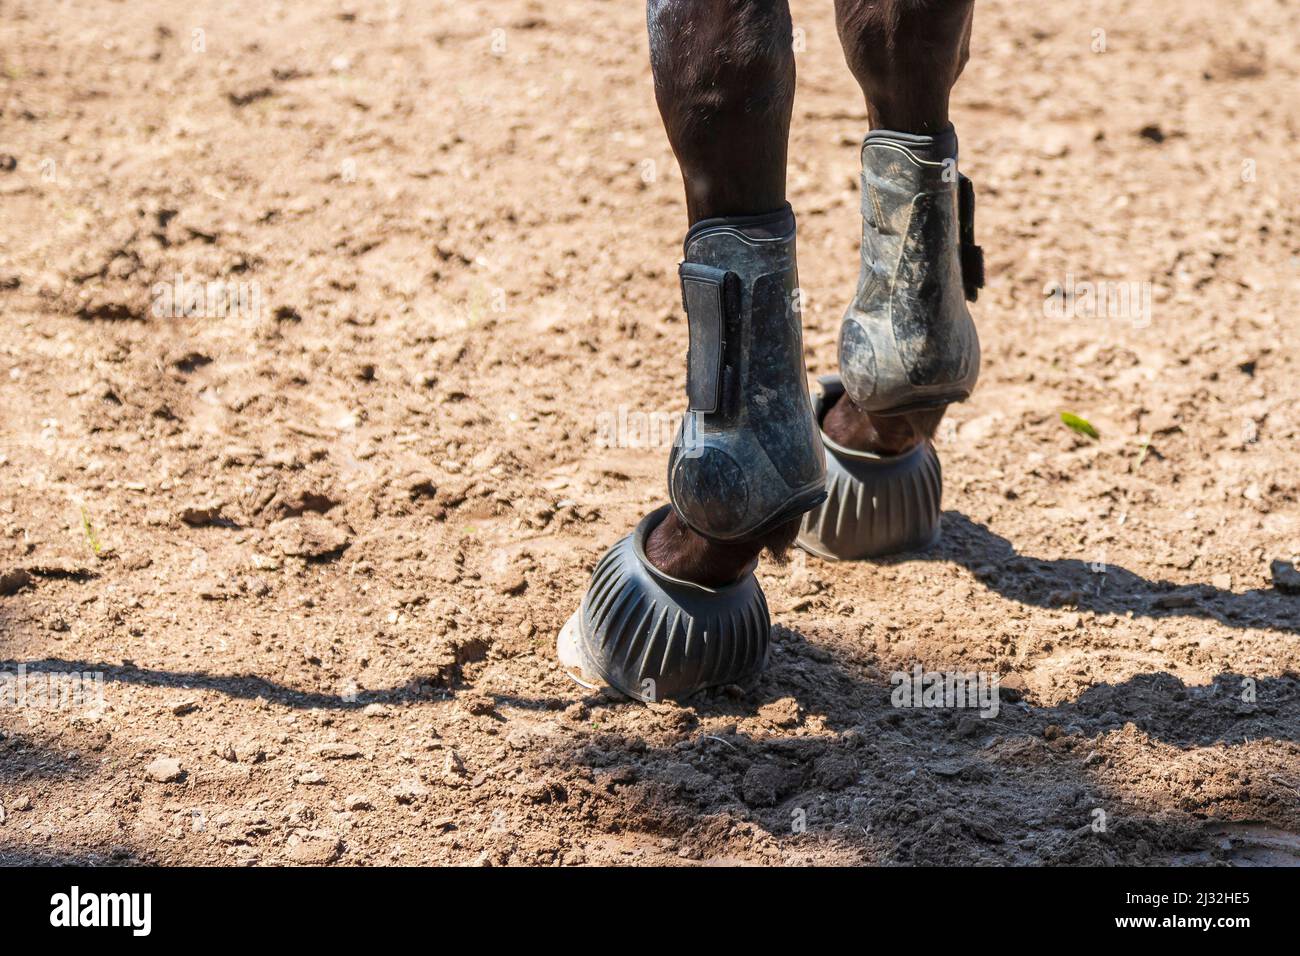 Primo piano del piede di un cavallo. Il cavallo ha ortosi e protezione dello zoccolino sulla gamba. Foto Stock